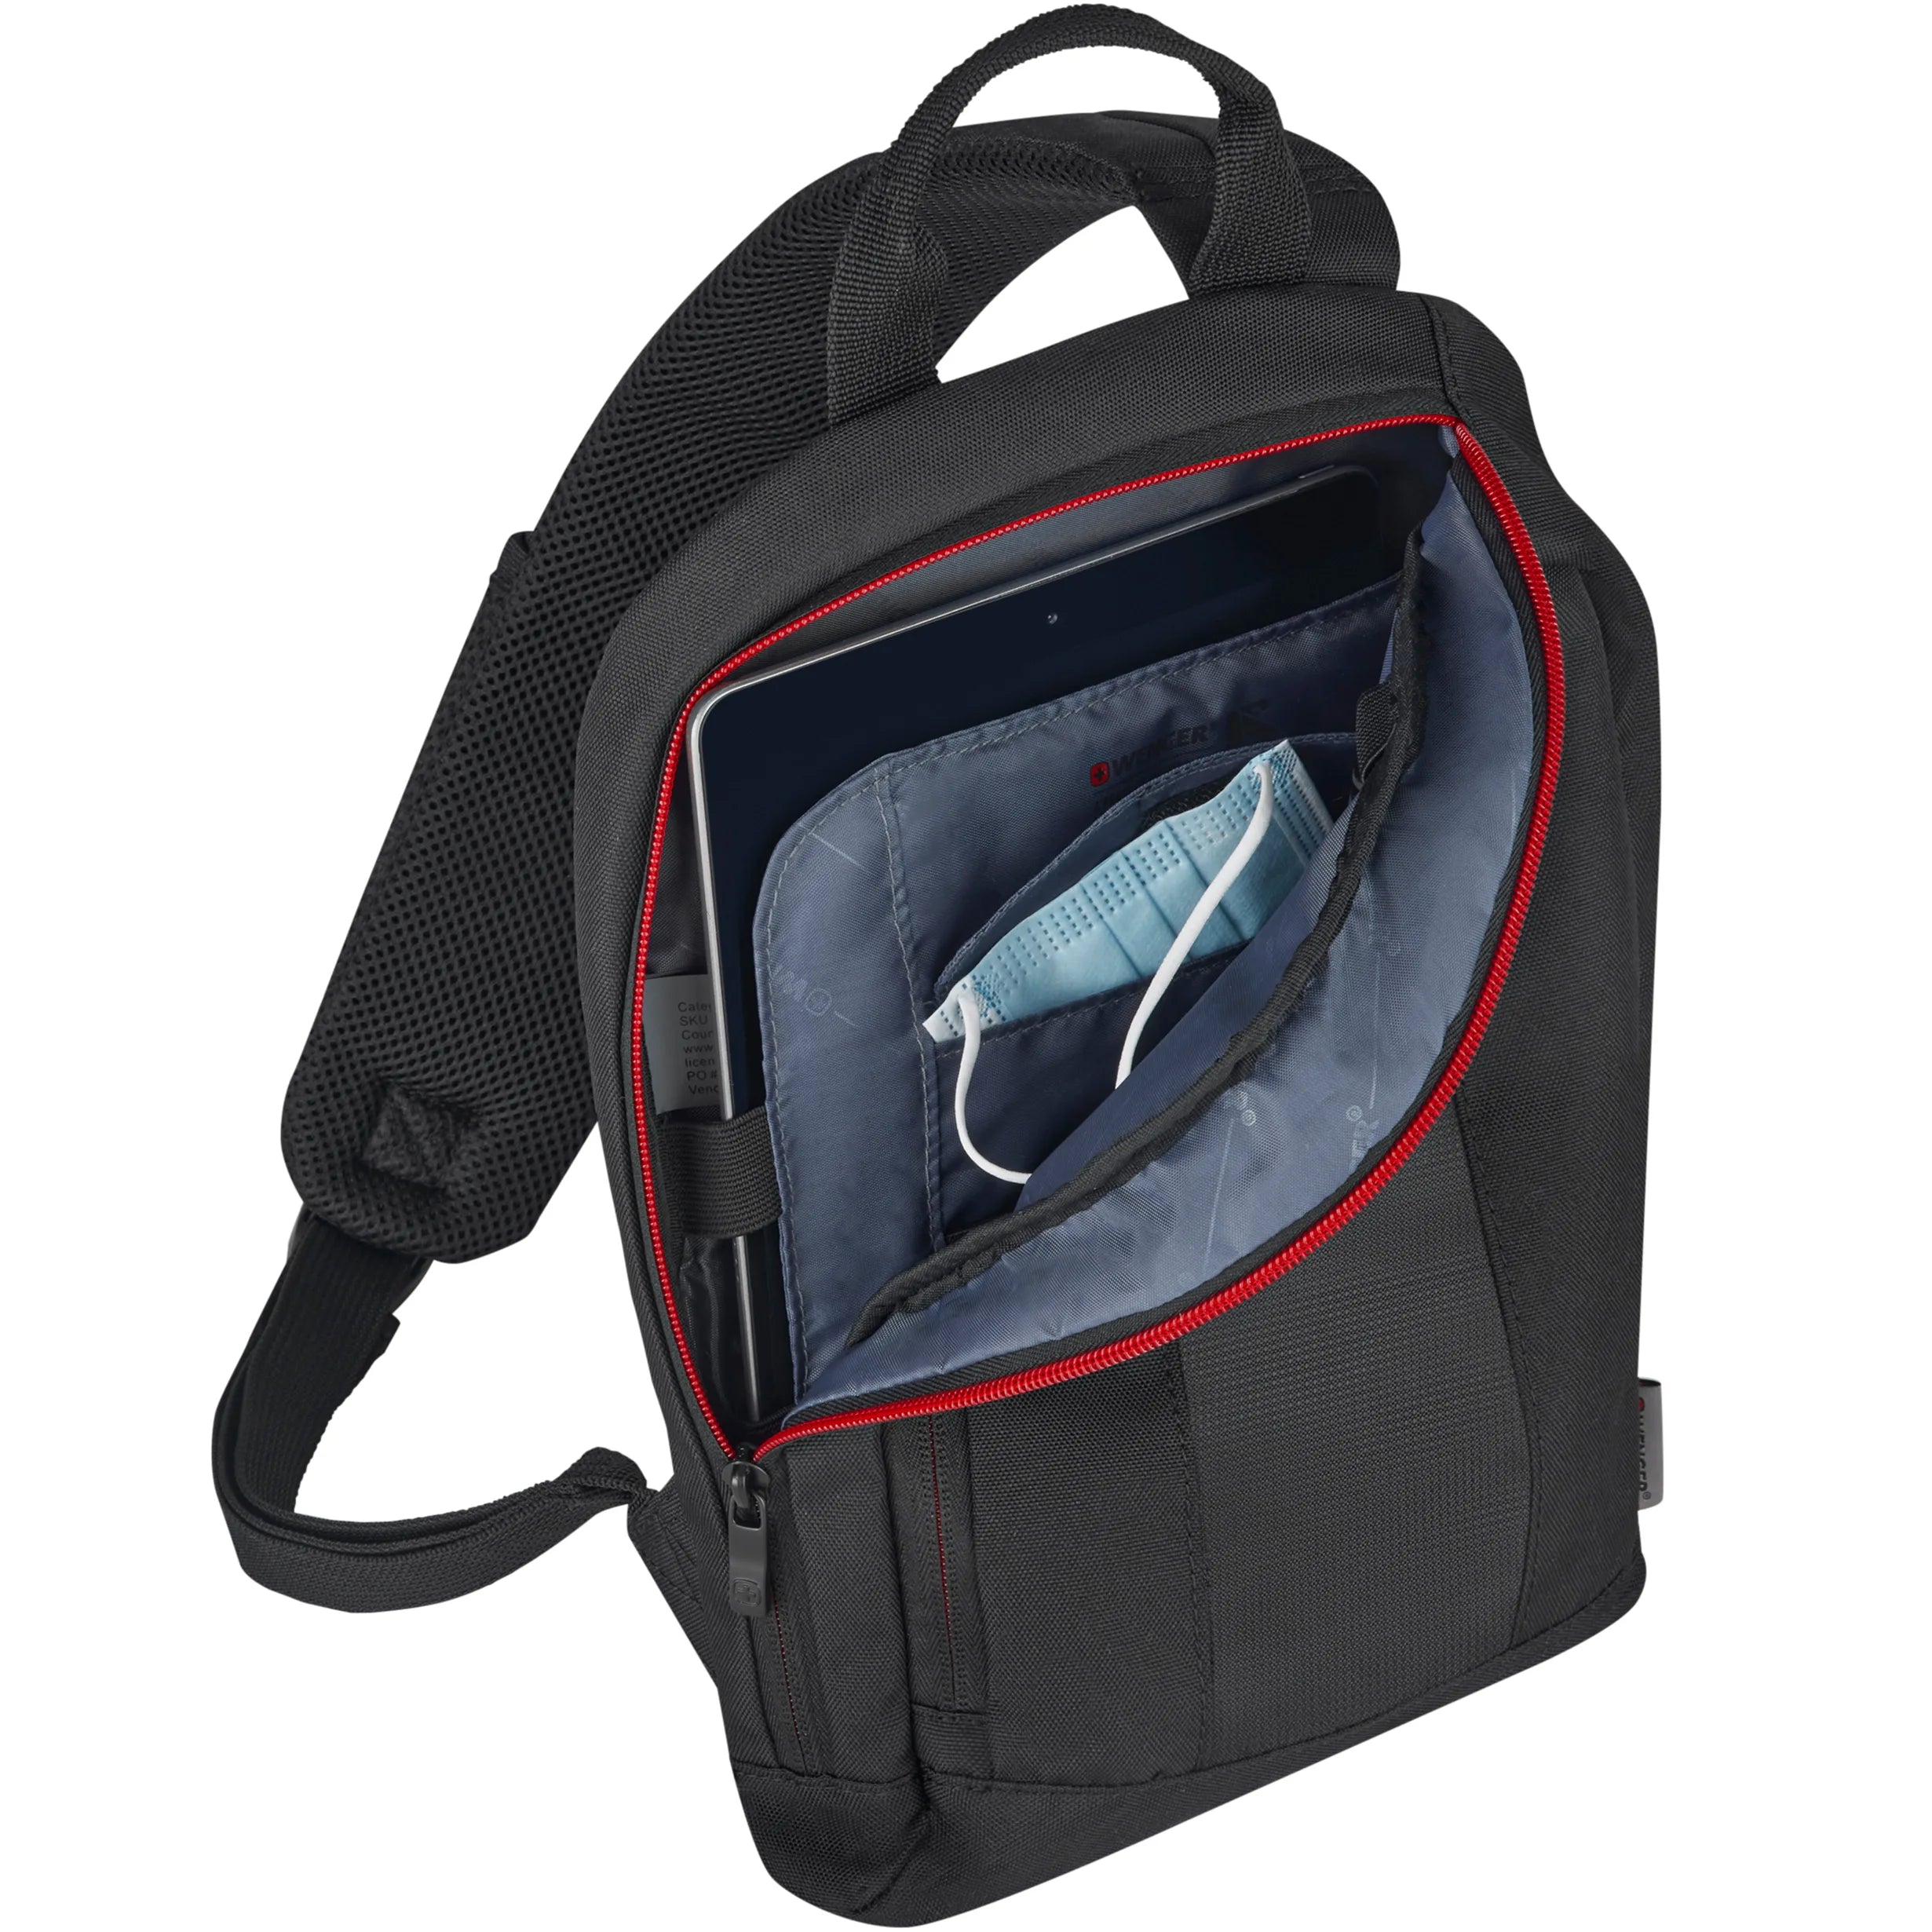 Wenger Travel Accessories Monosling shoulder bag 36 cm - Black